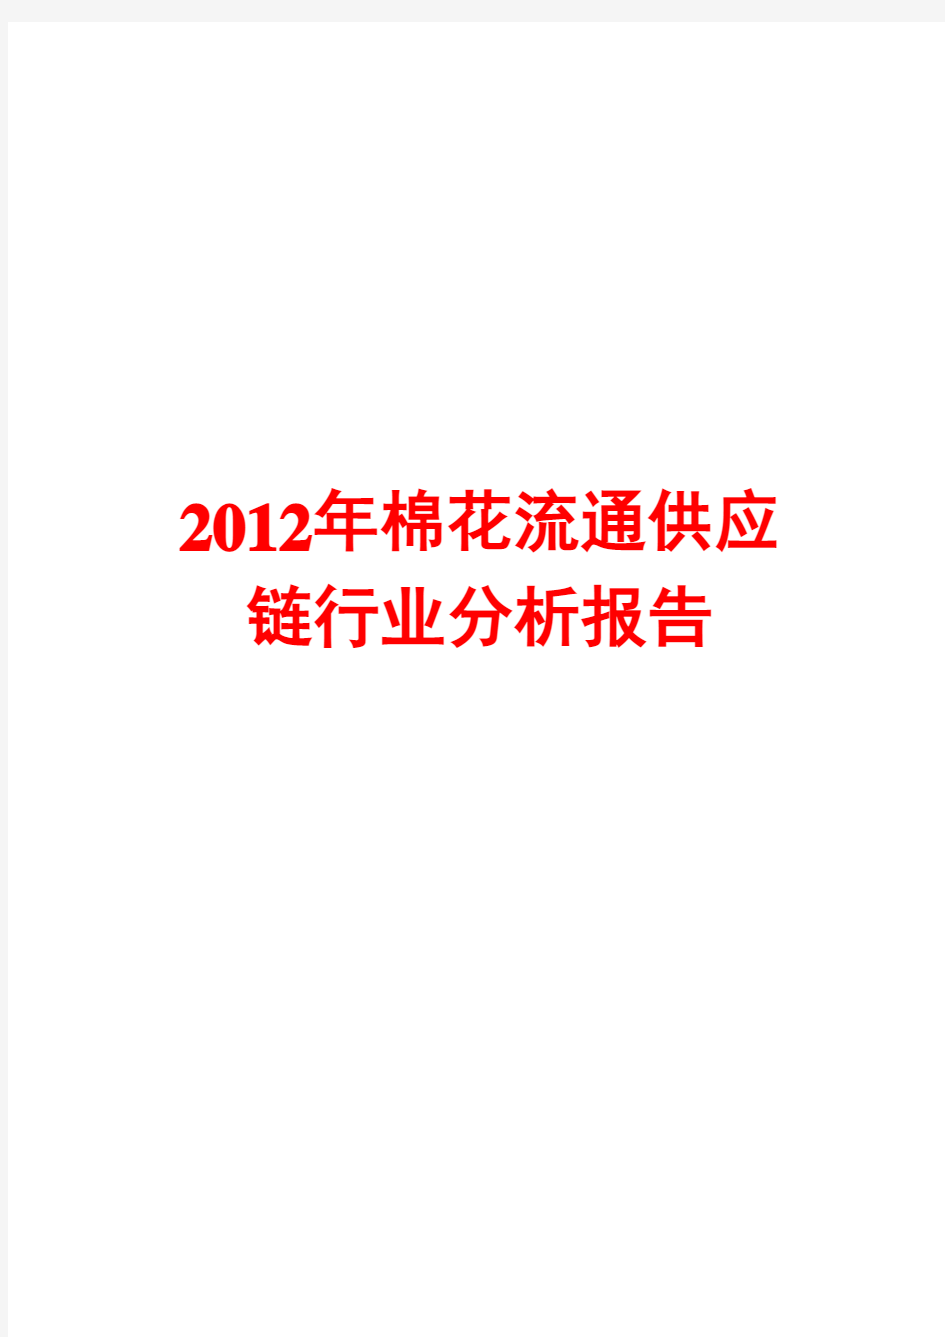 2012年棉花流通供应链行业分析报告